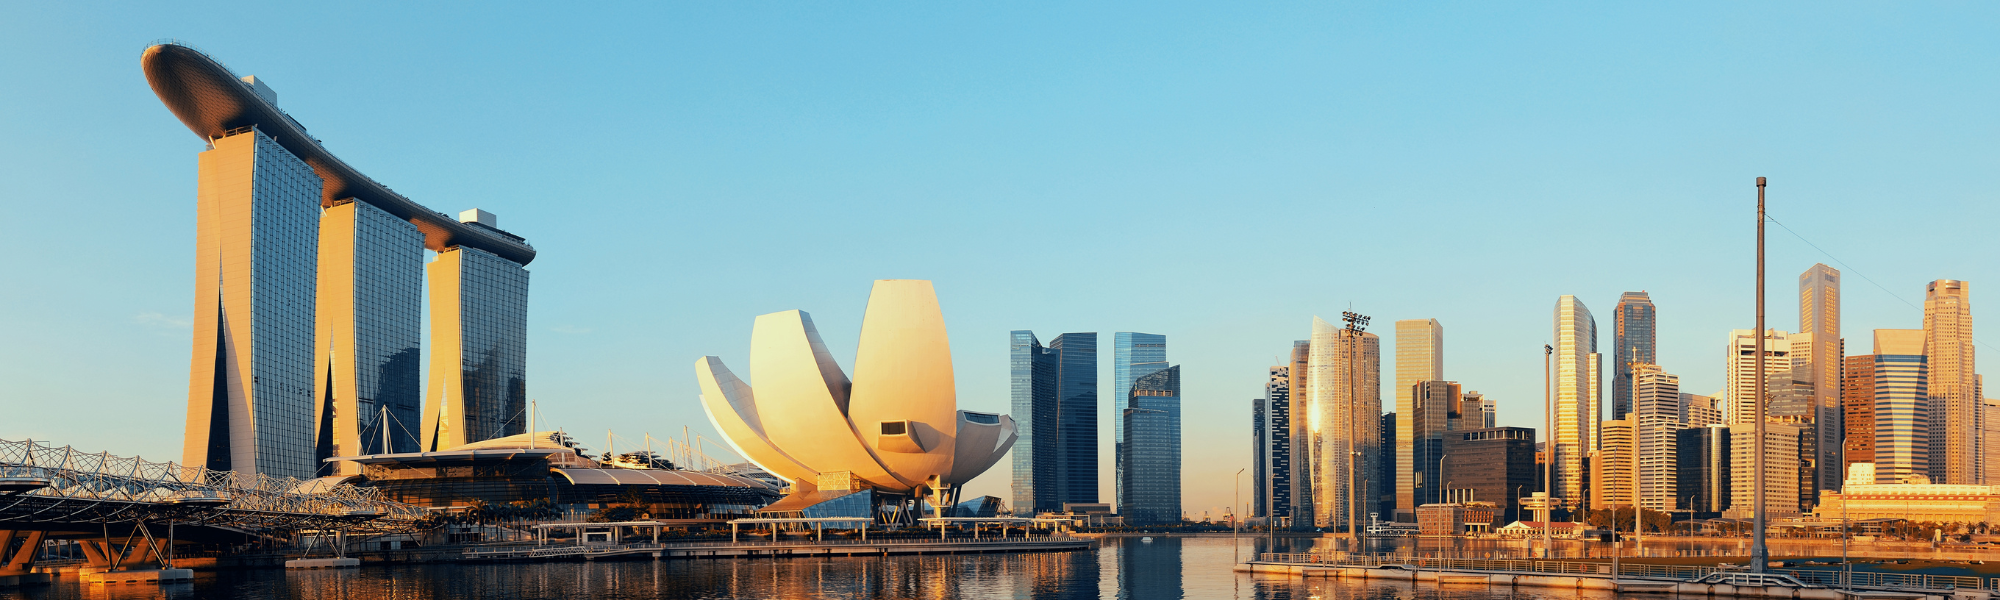 Meet Faststream Recruitment at Singapore Maritime Week 2024